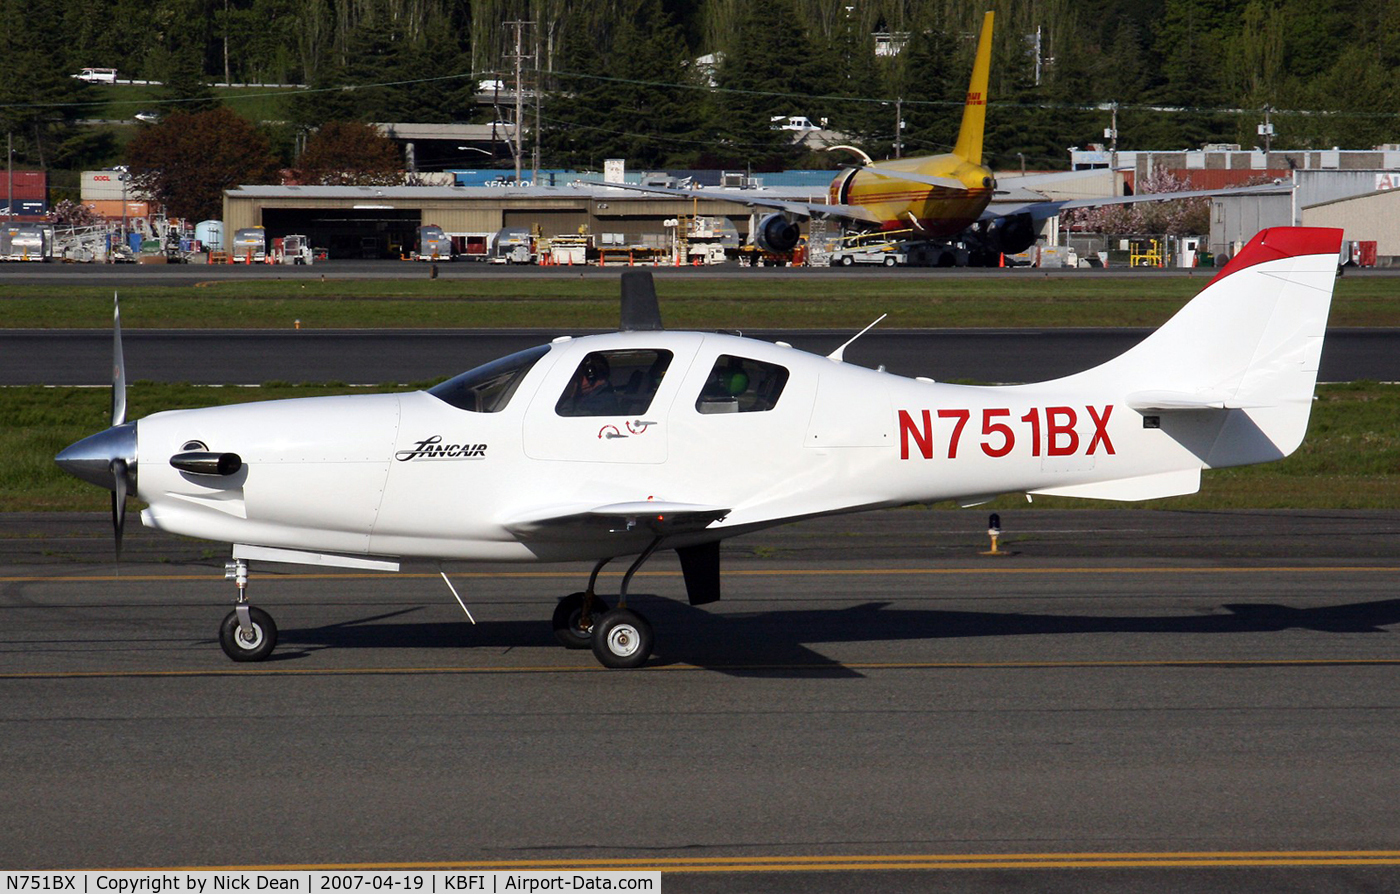 N751BX, 2006 Lancair Propjet C/N LIV-582, KBFI